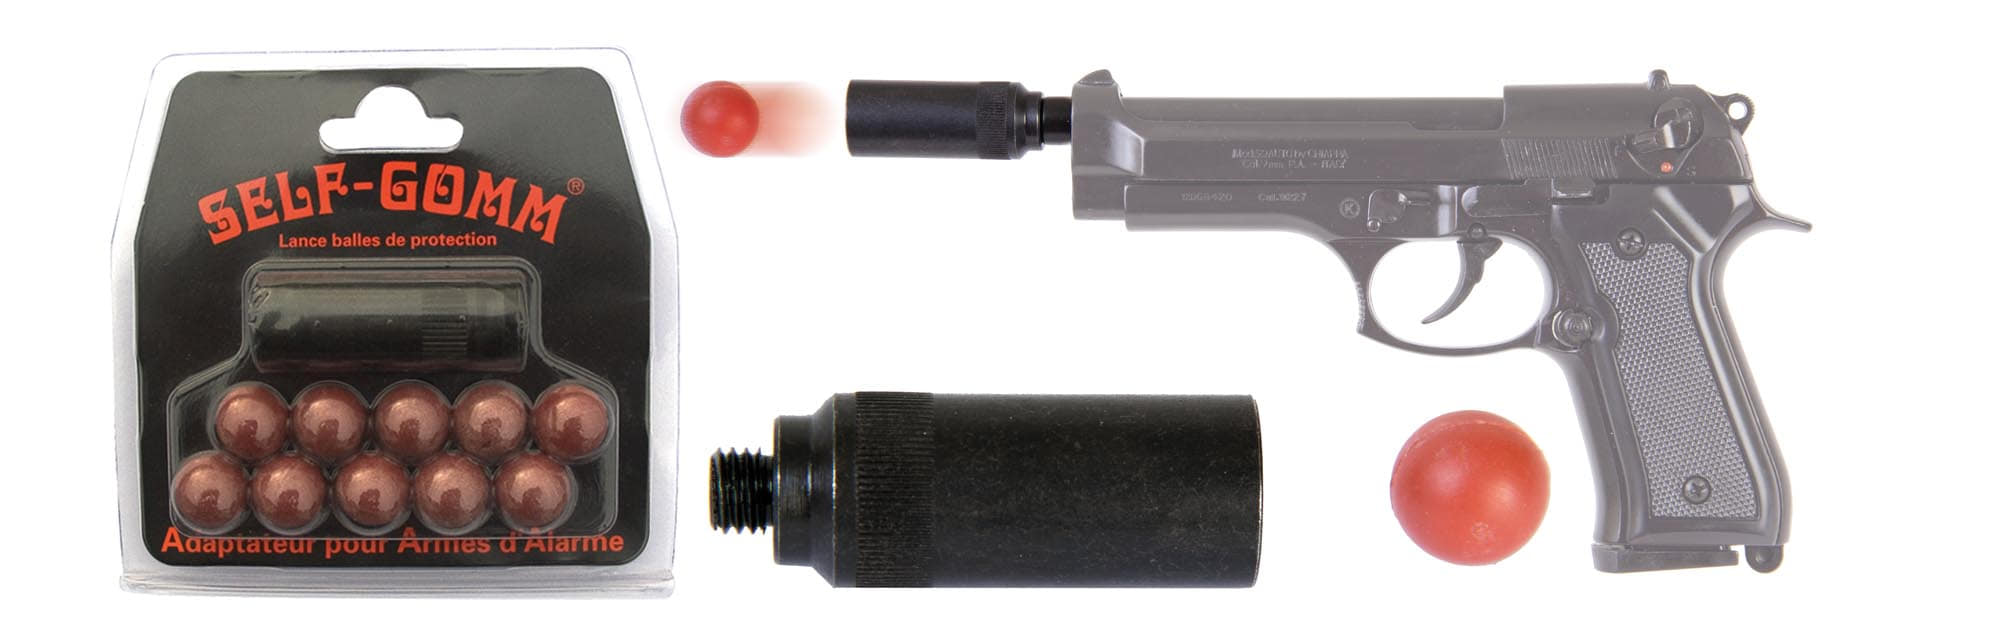 Adaptateur pour armes d'alarme + 10 projectiles Self Gomm calibre 18 mm